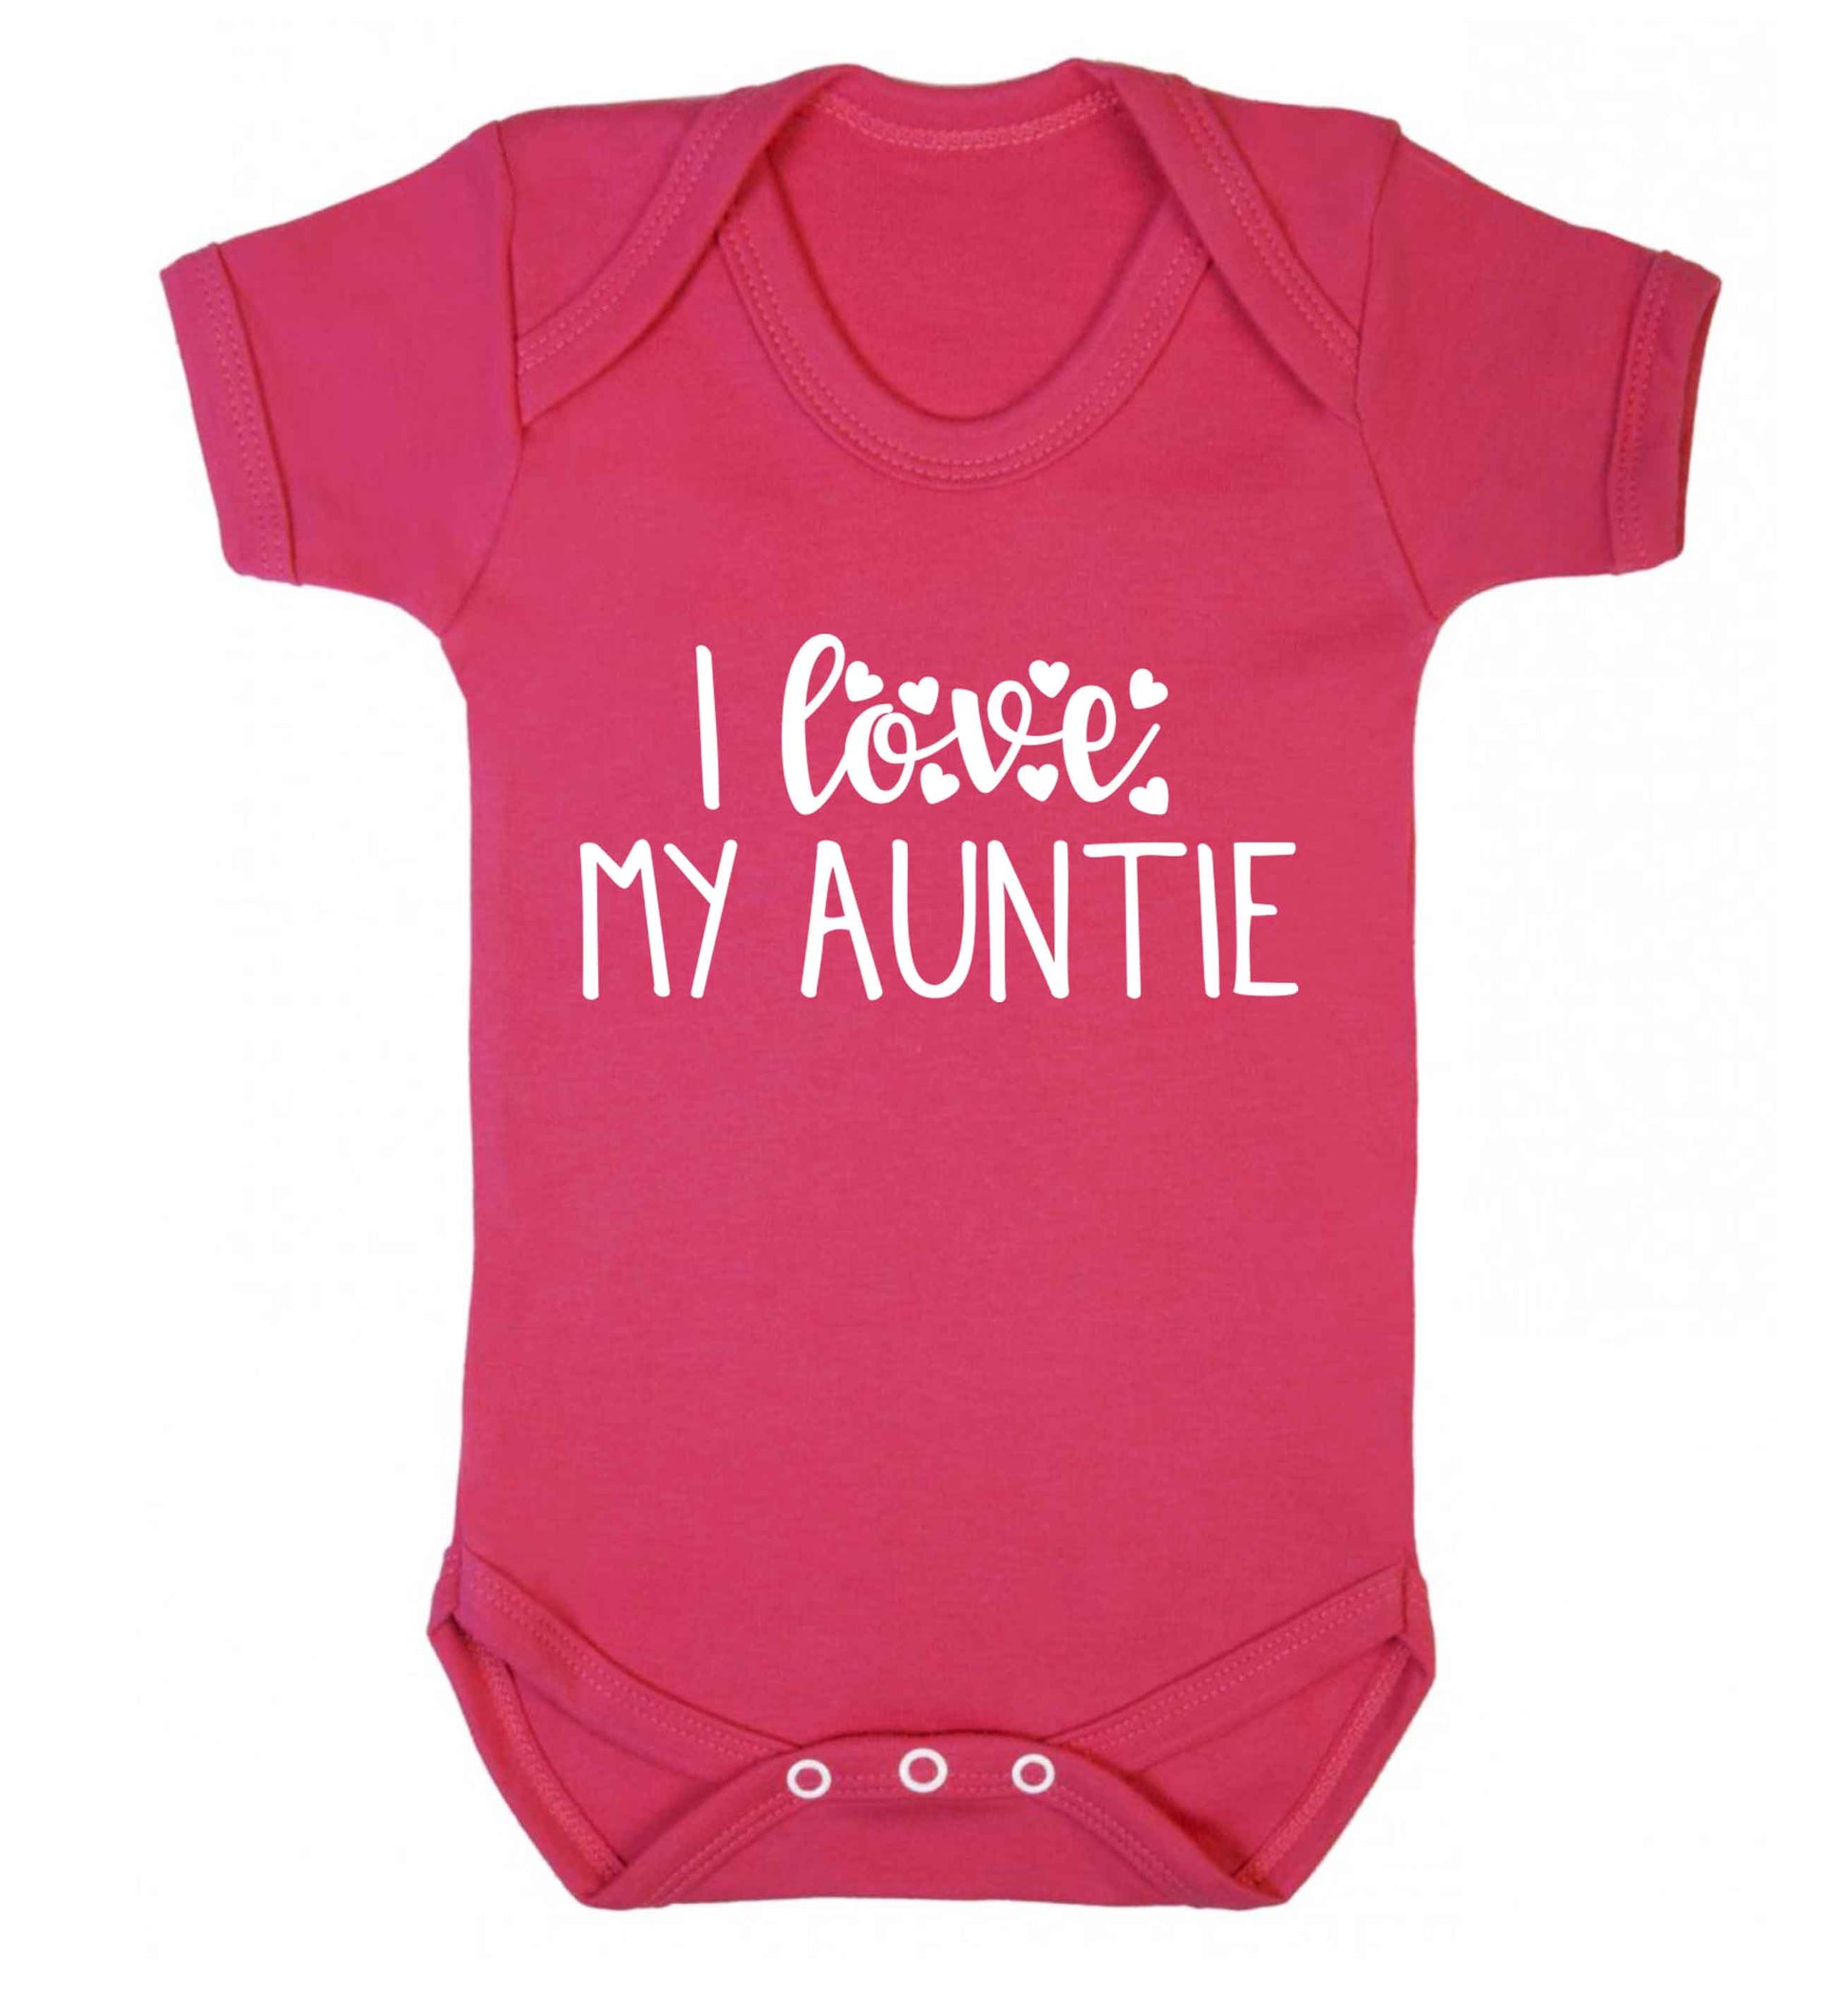 I love my auntie Baby Vest dark pink 18-24 months